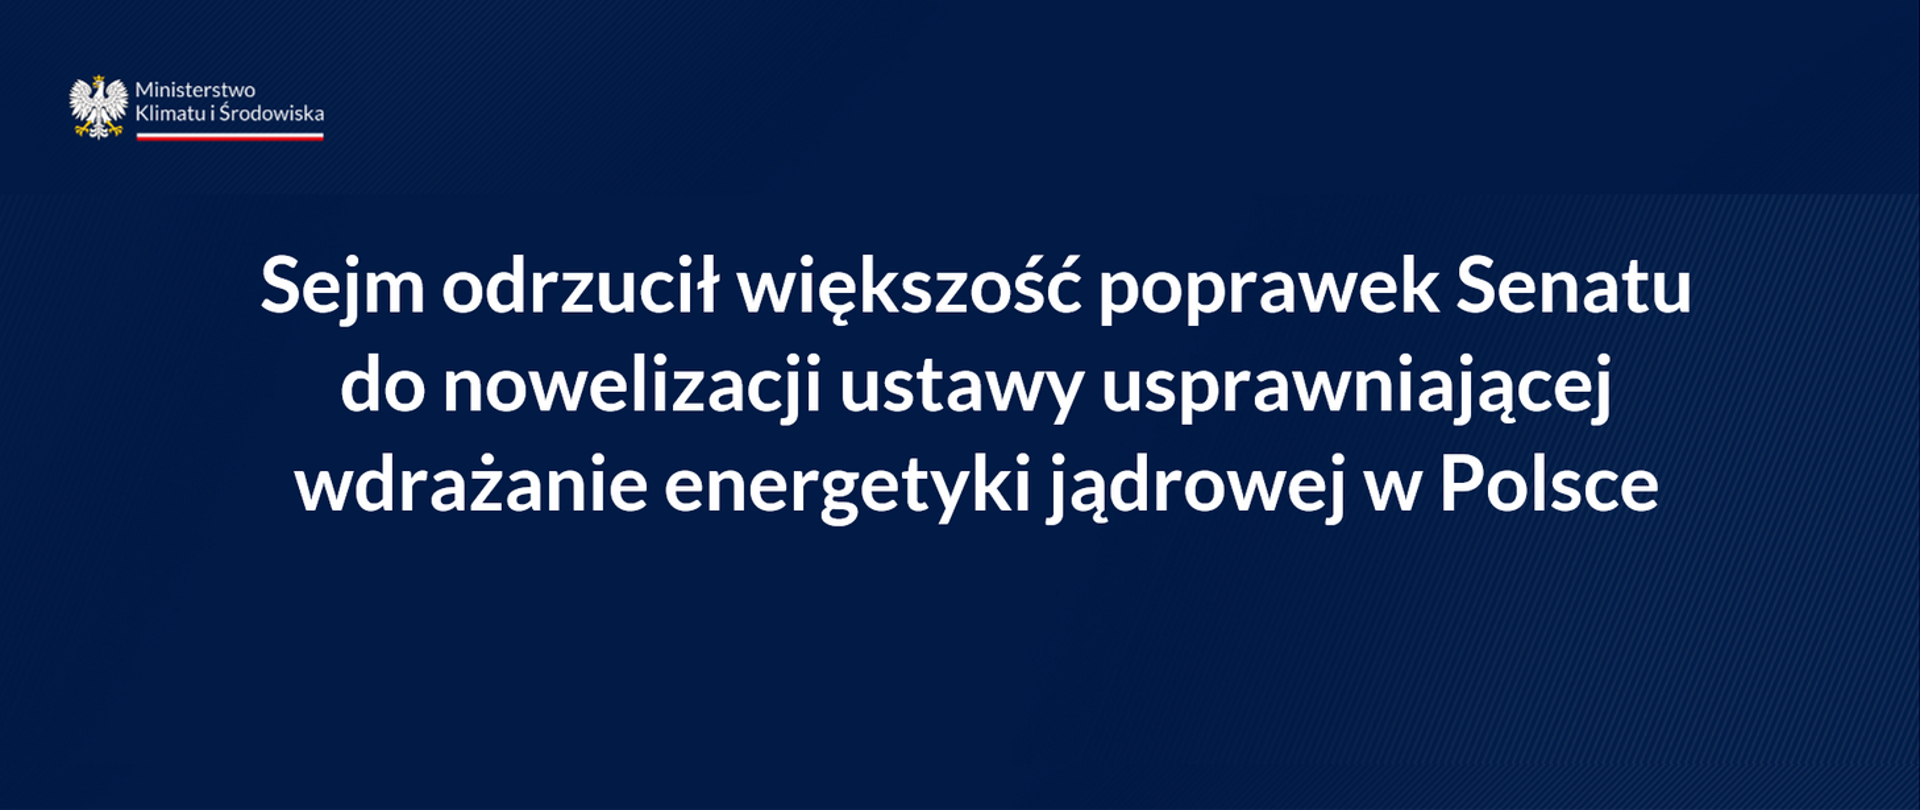 Sejm odrzucił większość poprawek Senatu do nowelizacji ustawy usprawniającej wdrażanie energetyki jądrowej w Polsce